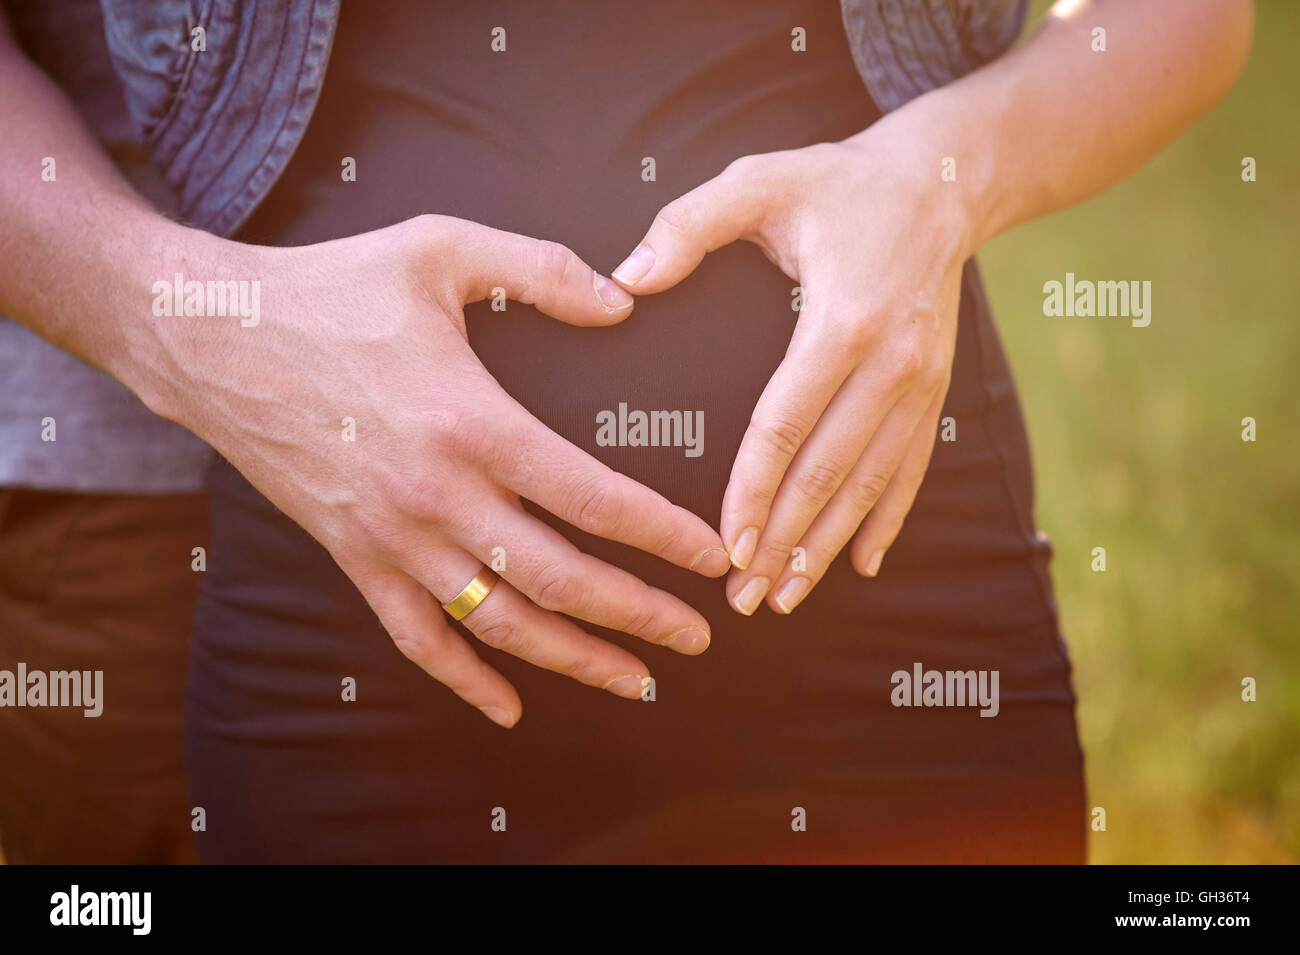 Schwangeren Bauch mit den Fingern des Mannes Herz-symbol Stockfoto